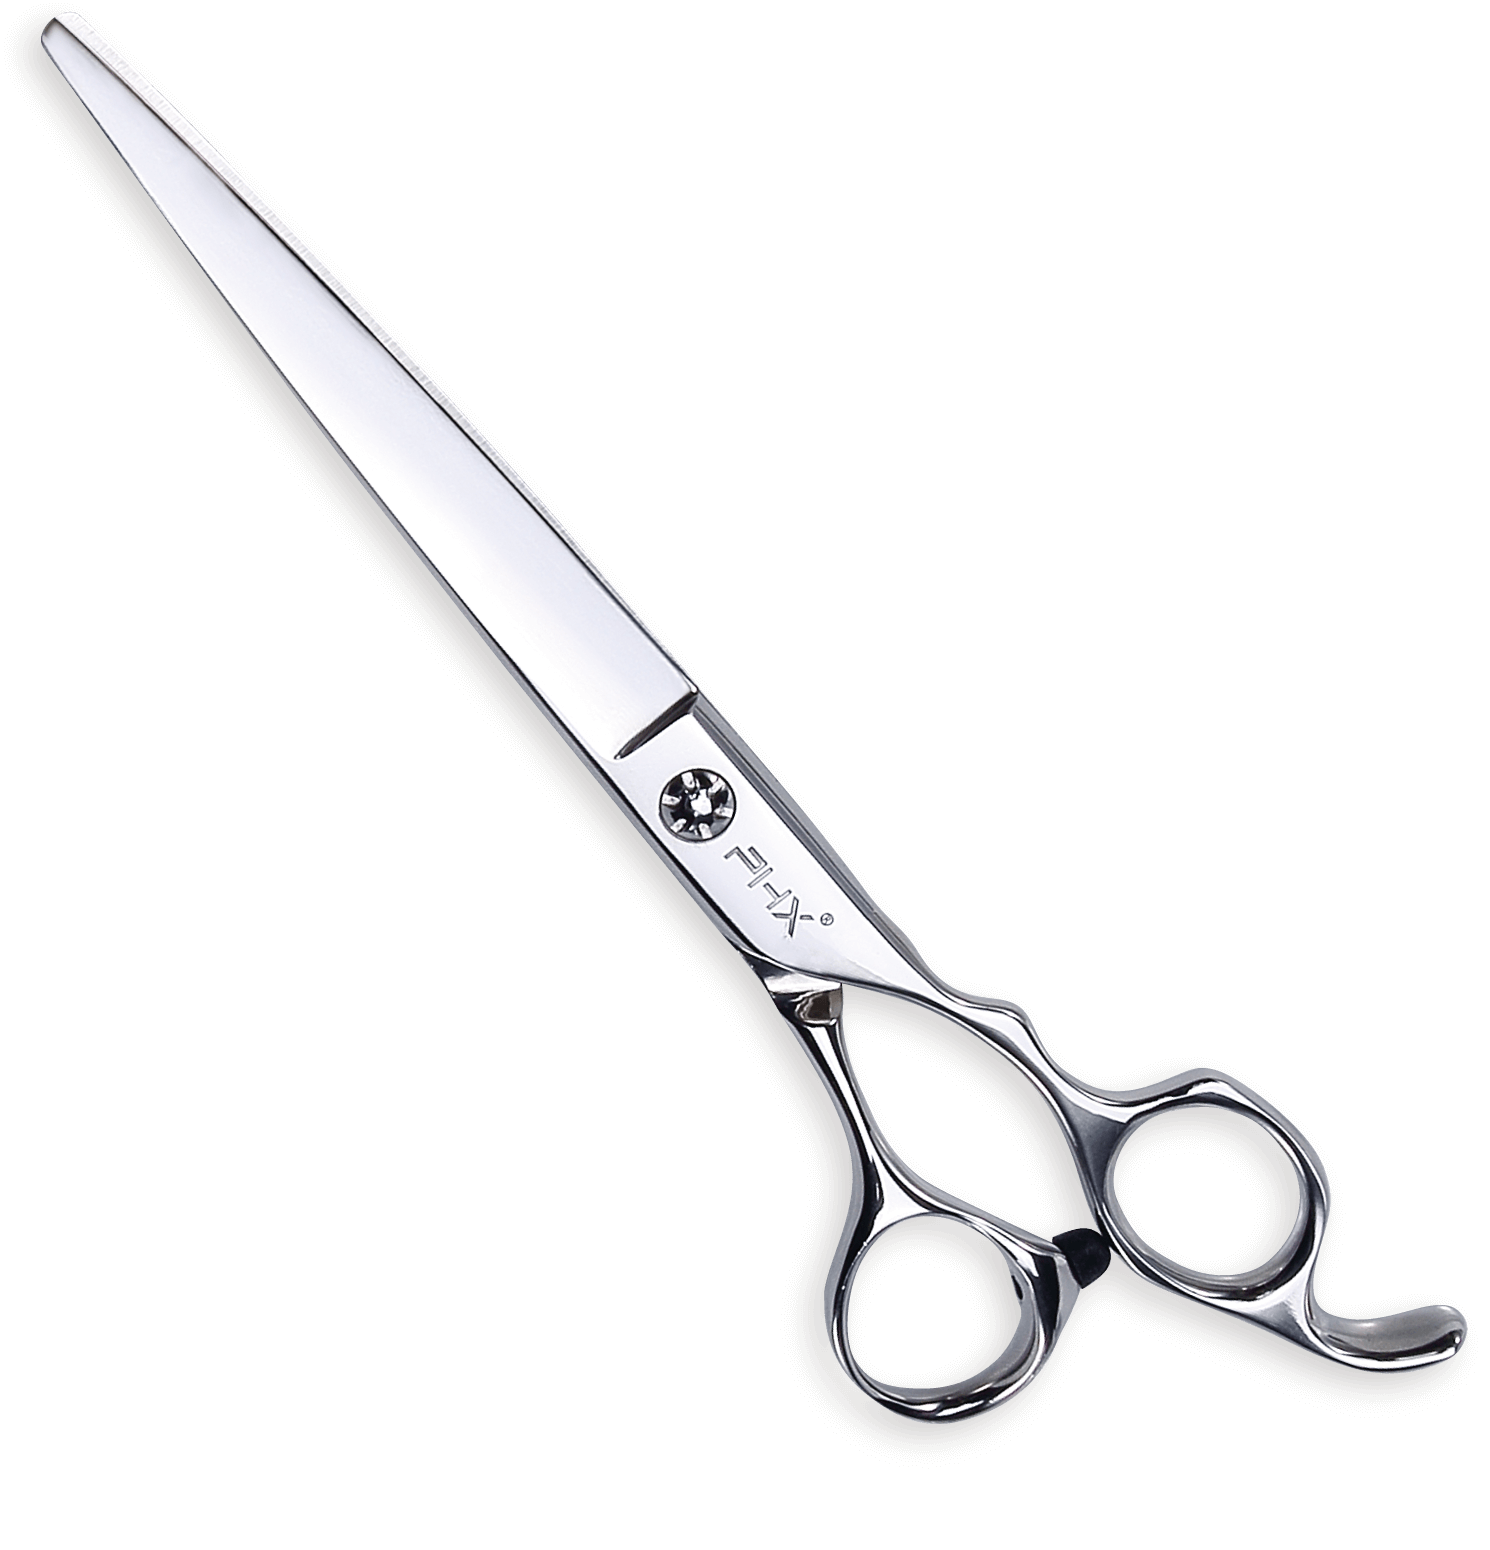 PHX Cut scissors A7